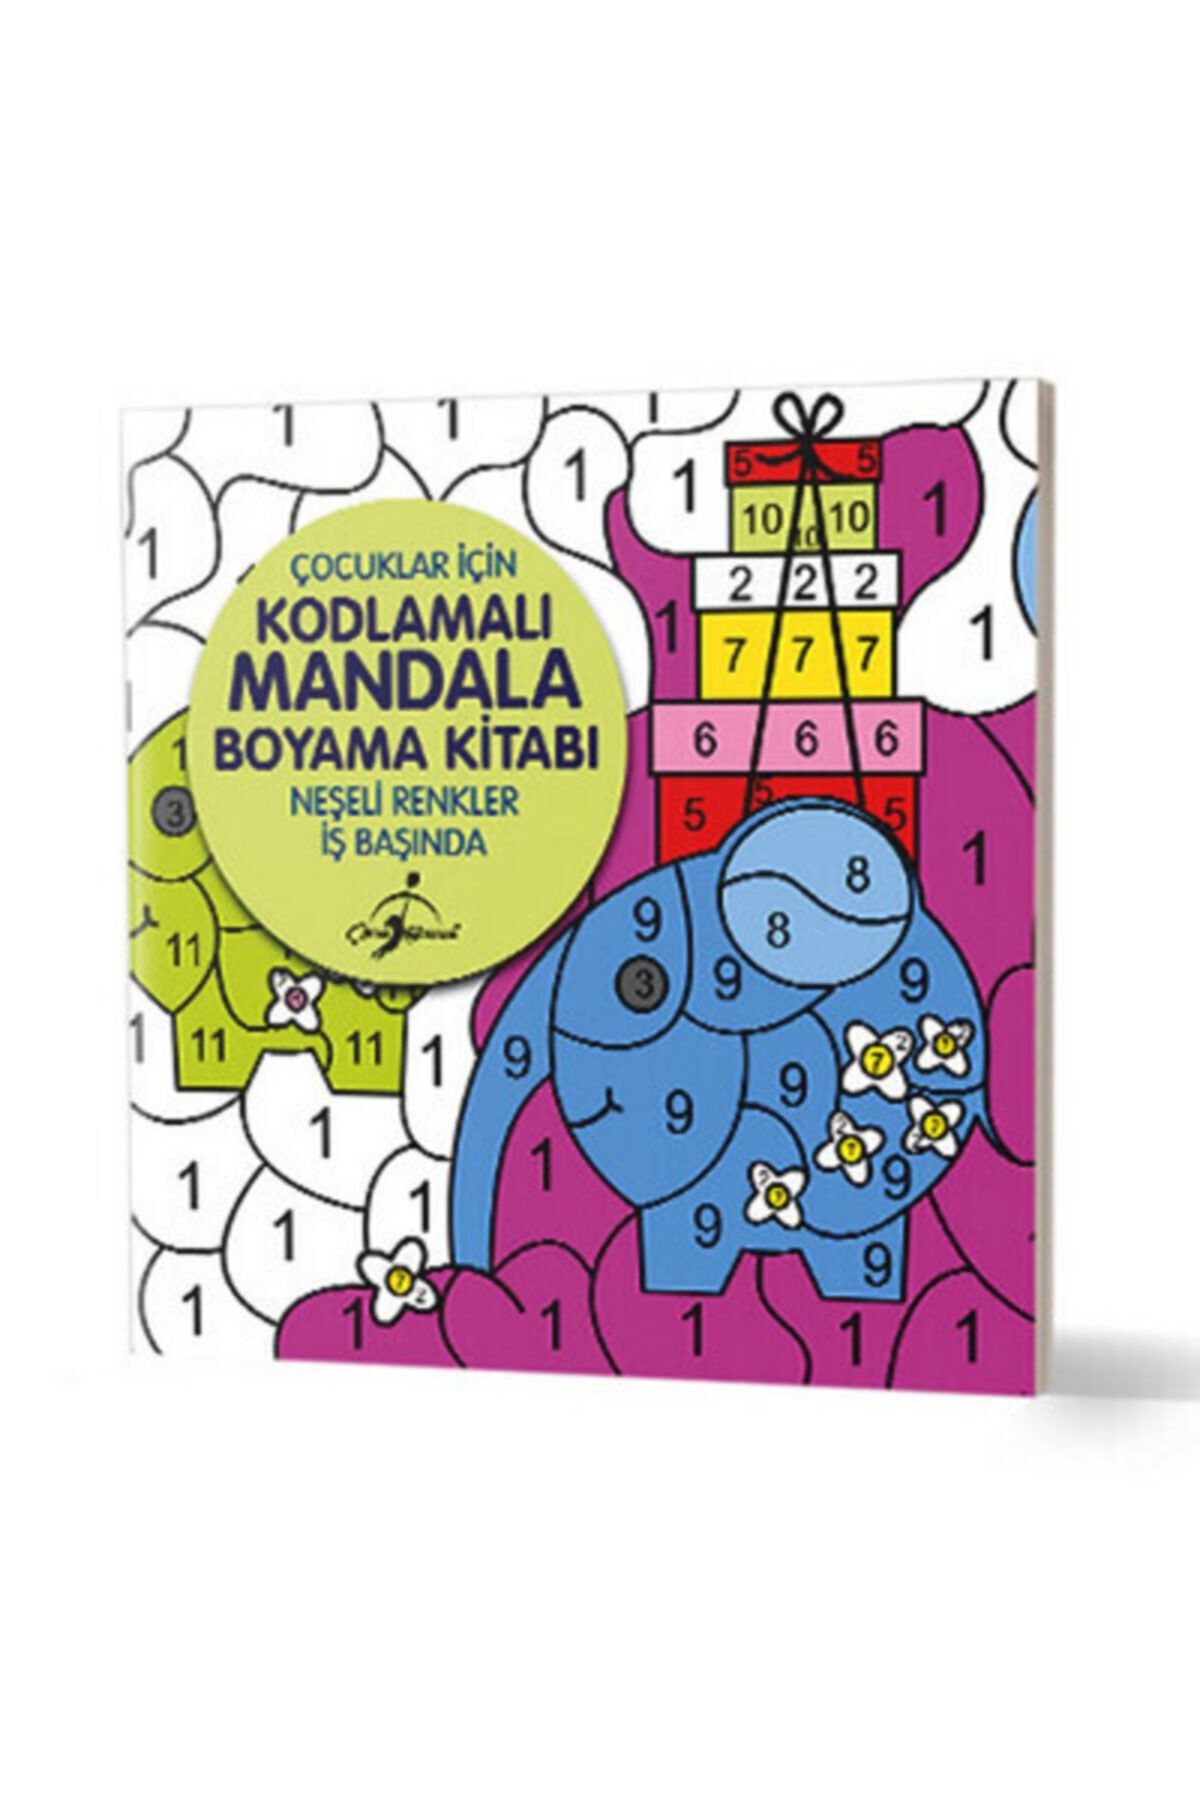 Çocuk Gezegeni Neşeli Renkler Iş Başında - Çocuklar Için Kodlamalı Mandala Boyama Kitabı